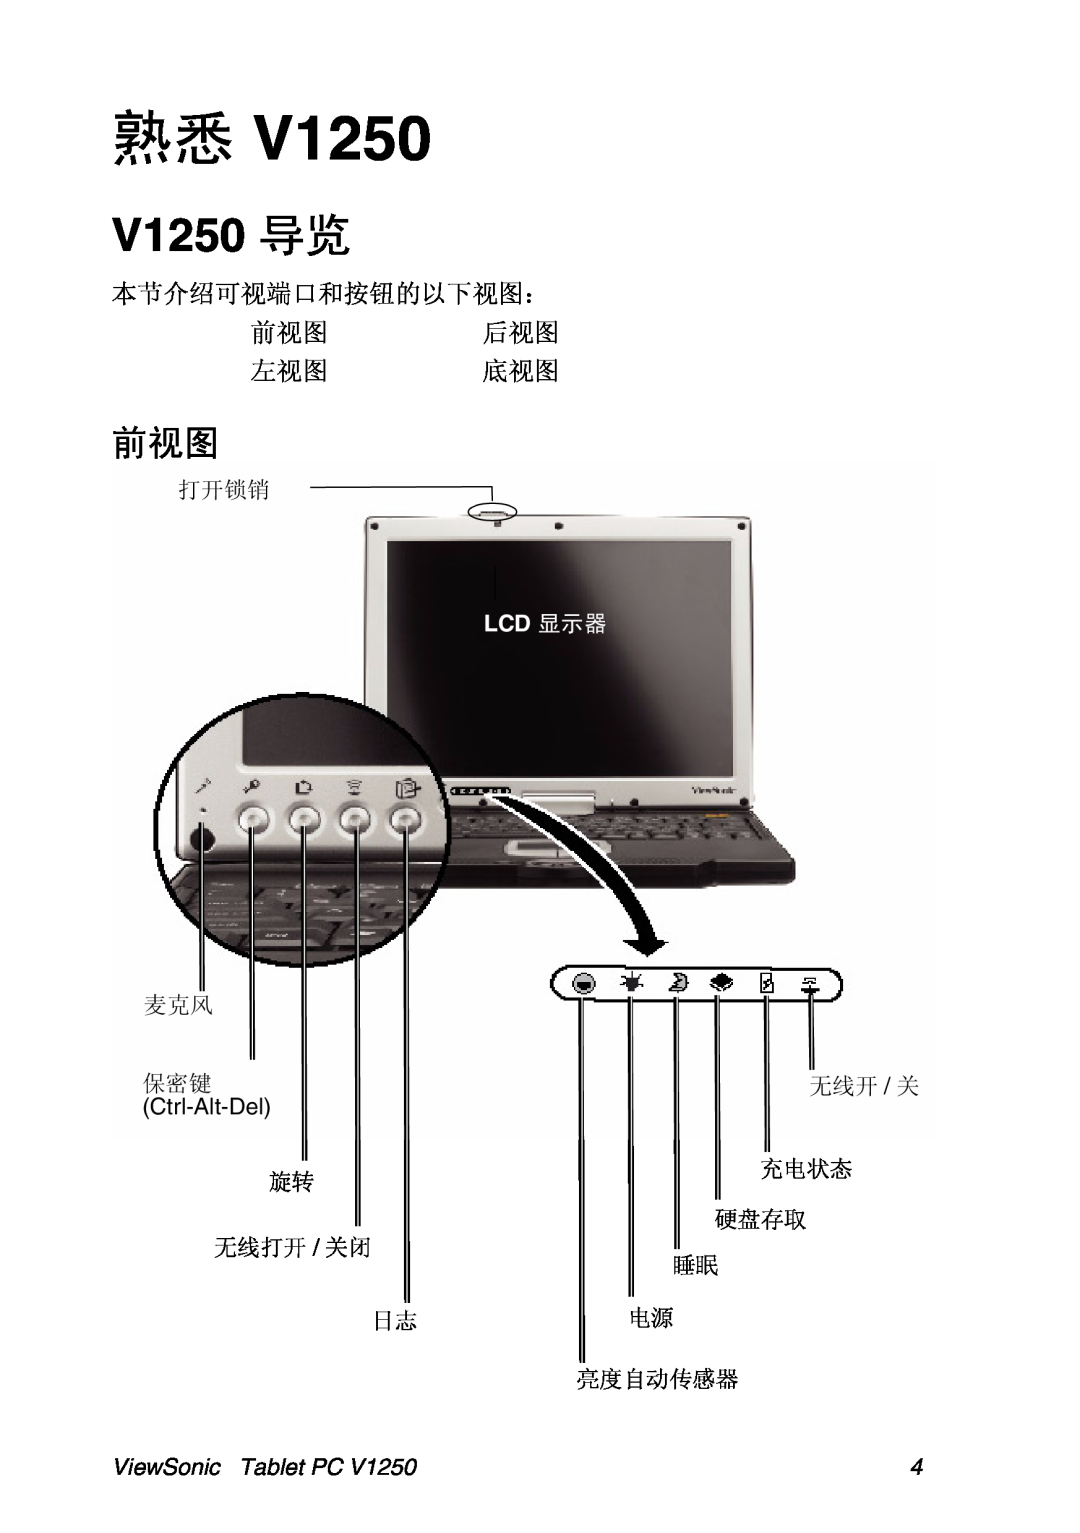 ViewSonic VSMW27922-1W manual V1250, Ctrl-Alt-Del, ViewSonic Tablet PC 